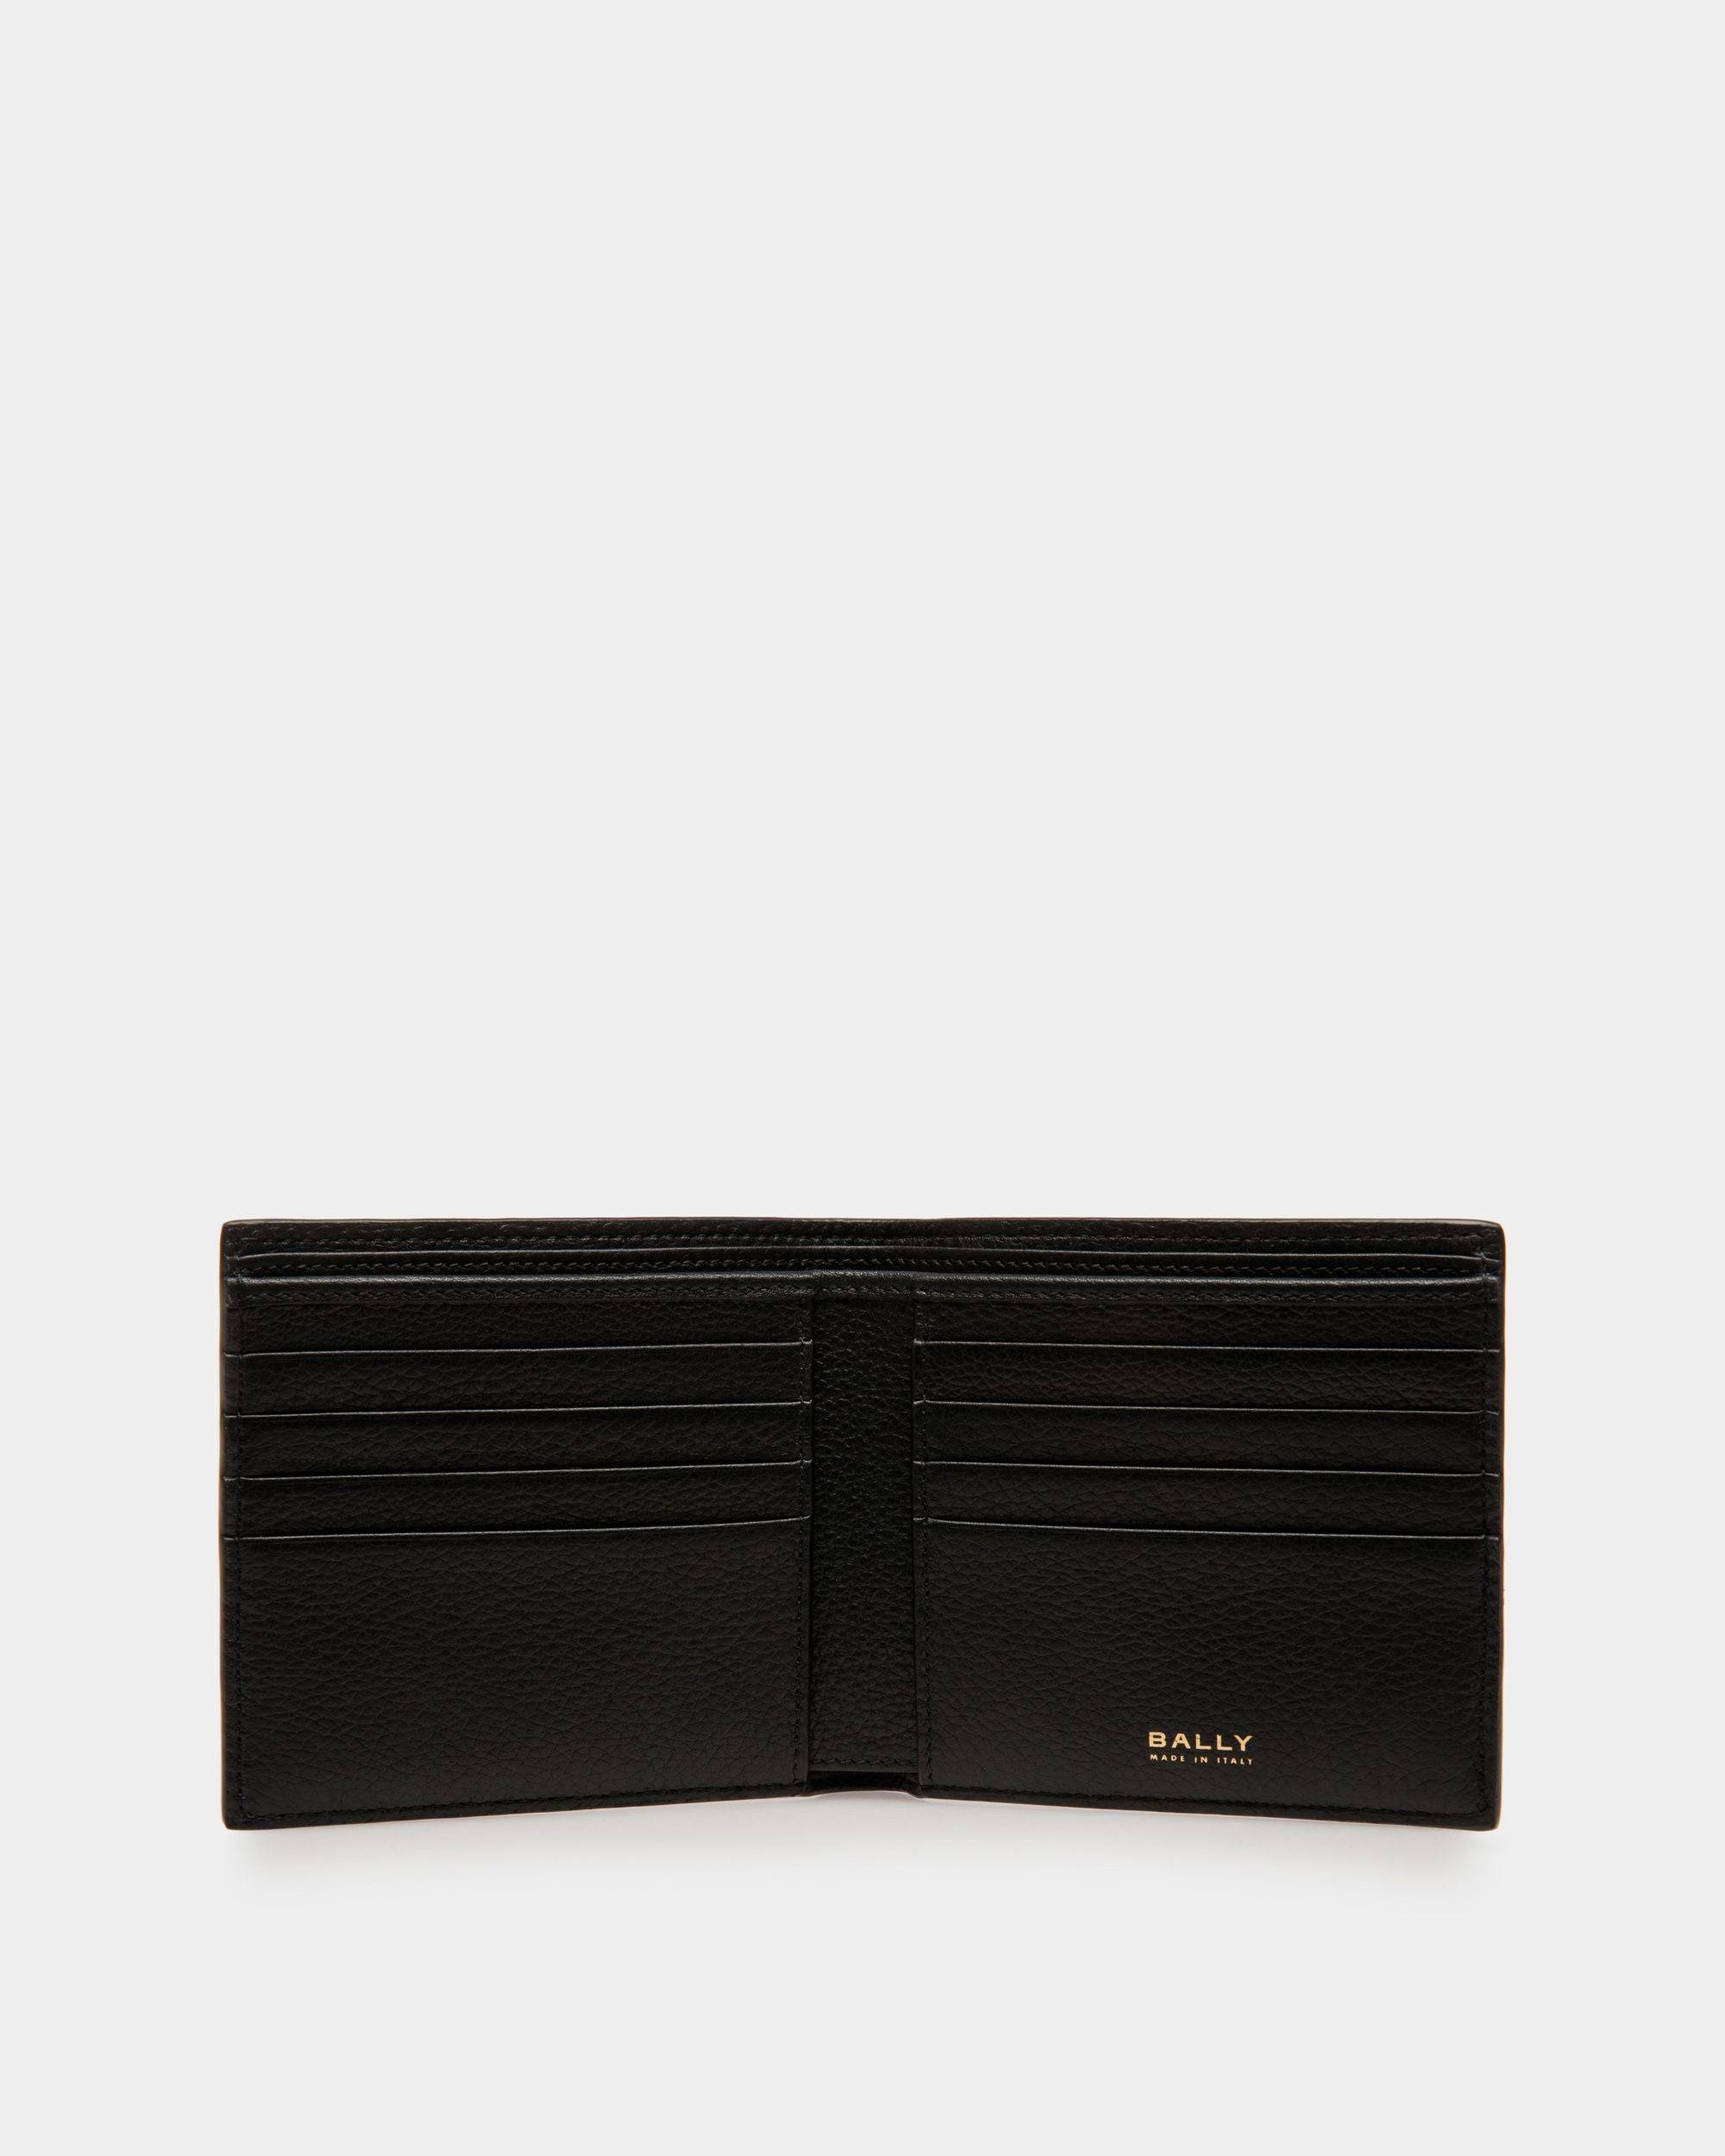 Bifold 8 CC Wallet | Men's Wallet | Black Leather | Bally | Still Life Open / Inside